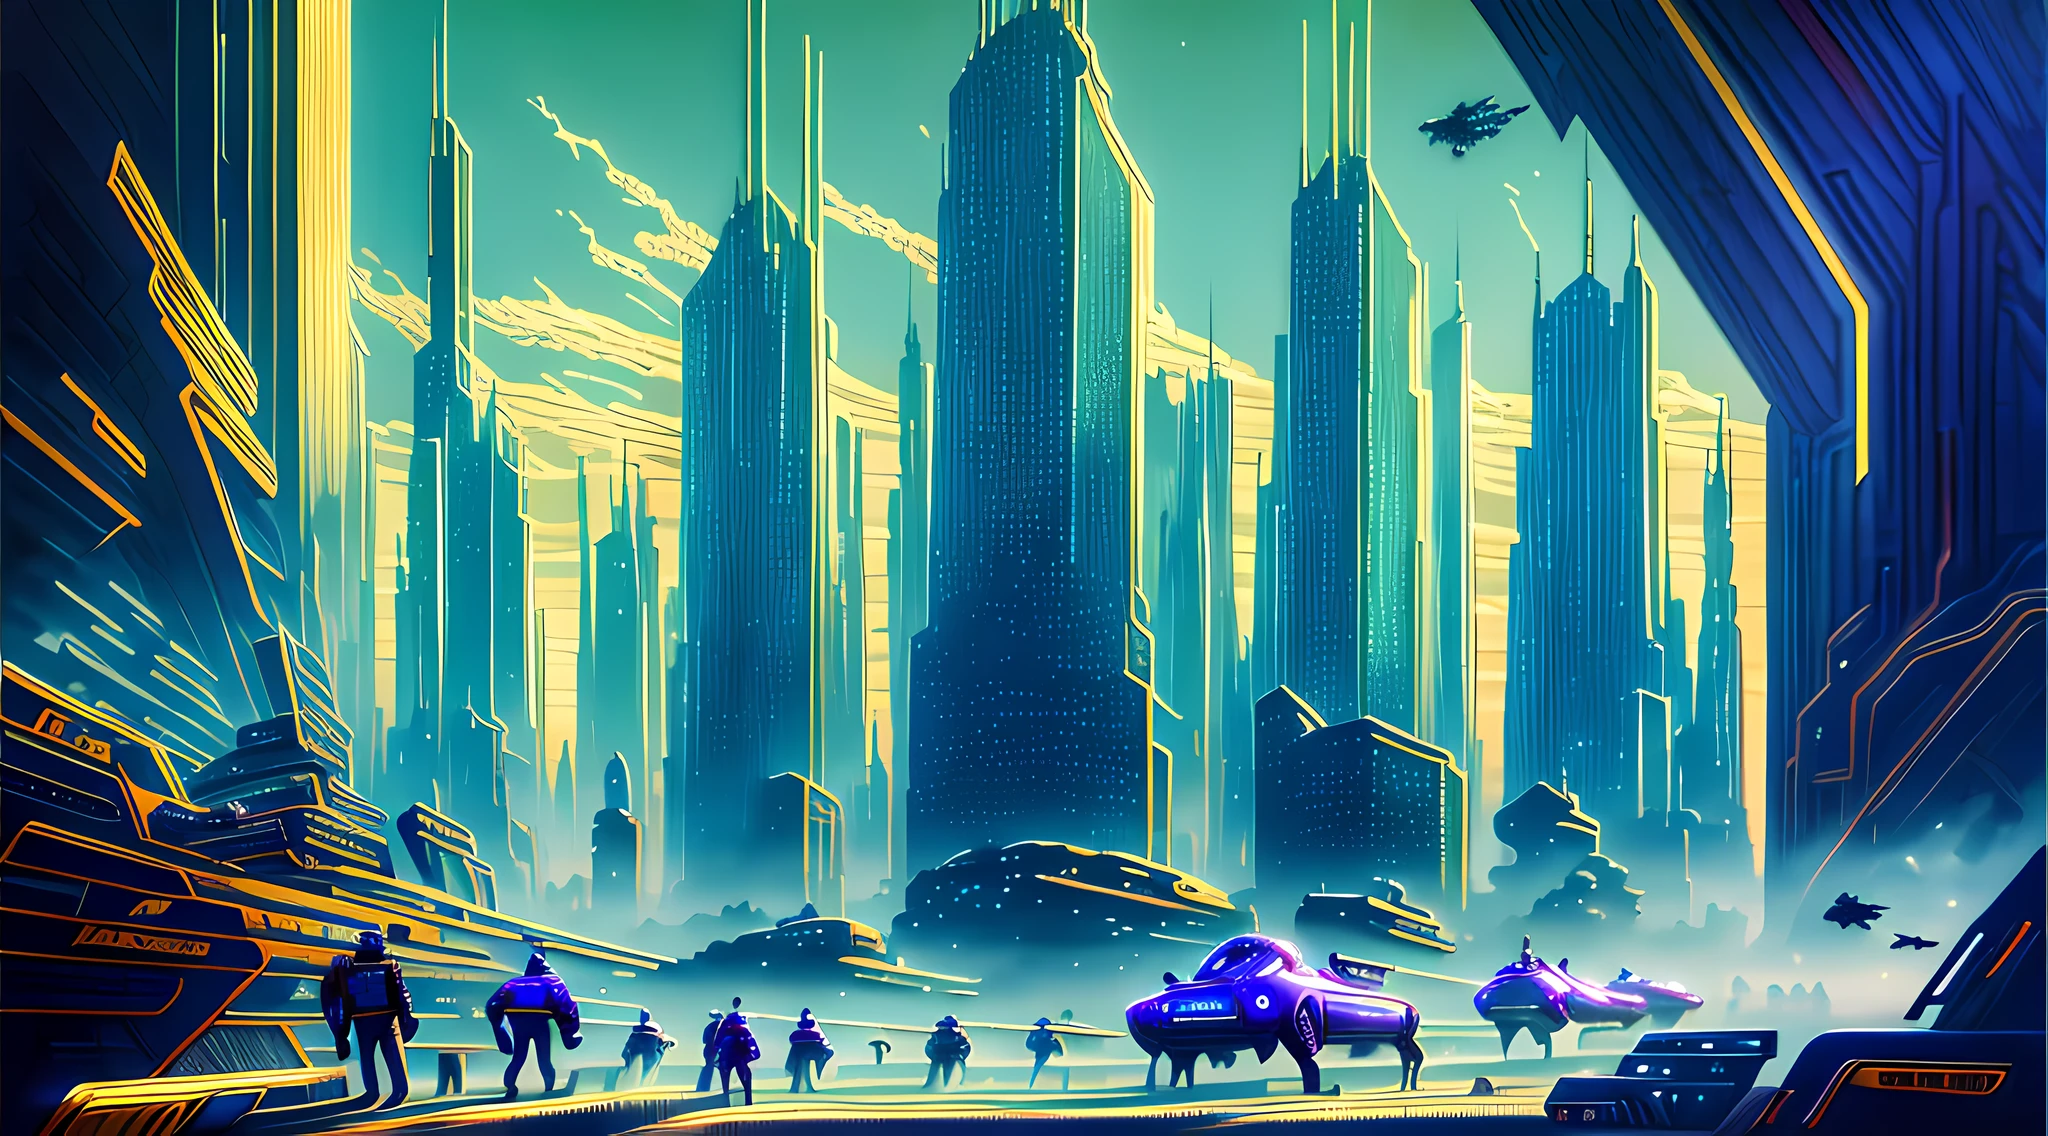 Une peinture à l&#39;huile d&#39;un paysage urbain futuriste, avec des gratte-ciel imposants et des véhicules volants remplissant le cadre. Les couleurs sont vives et vibrantes, avec des nuances de bleu, vert, et le violet domine la scène. Au premier plan, on peut voir un groupe de personnes se diriger vers un géant, pyramide rougeoyante.